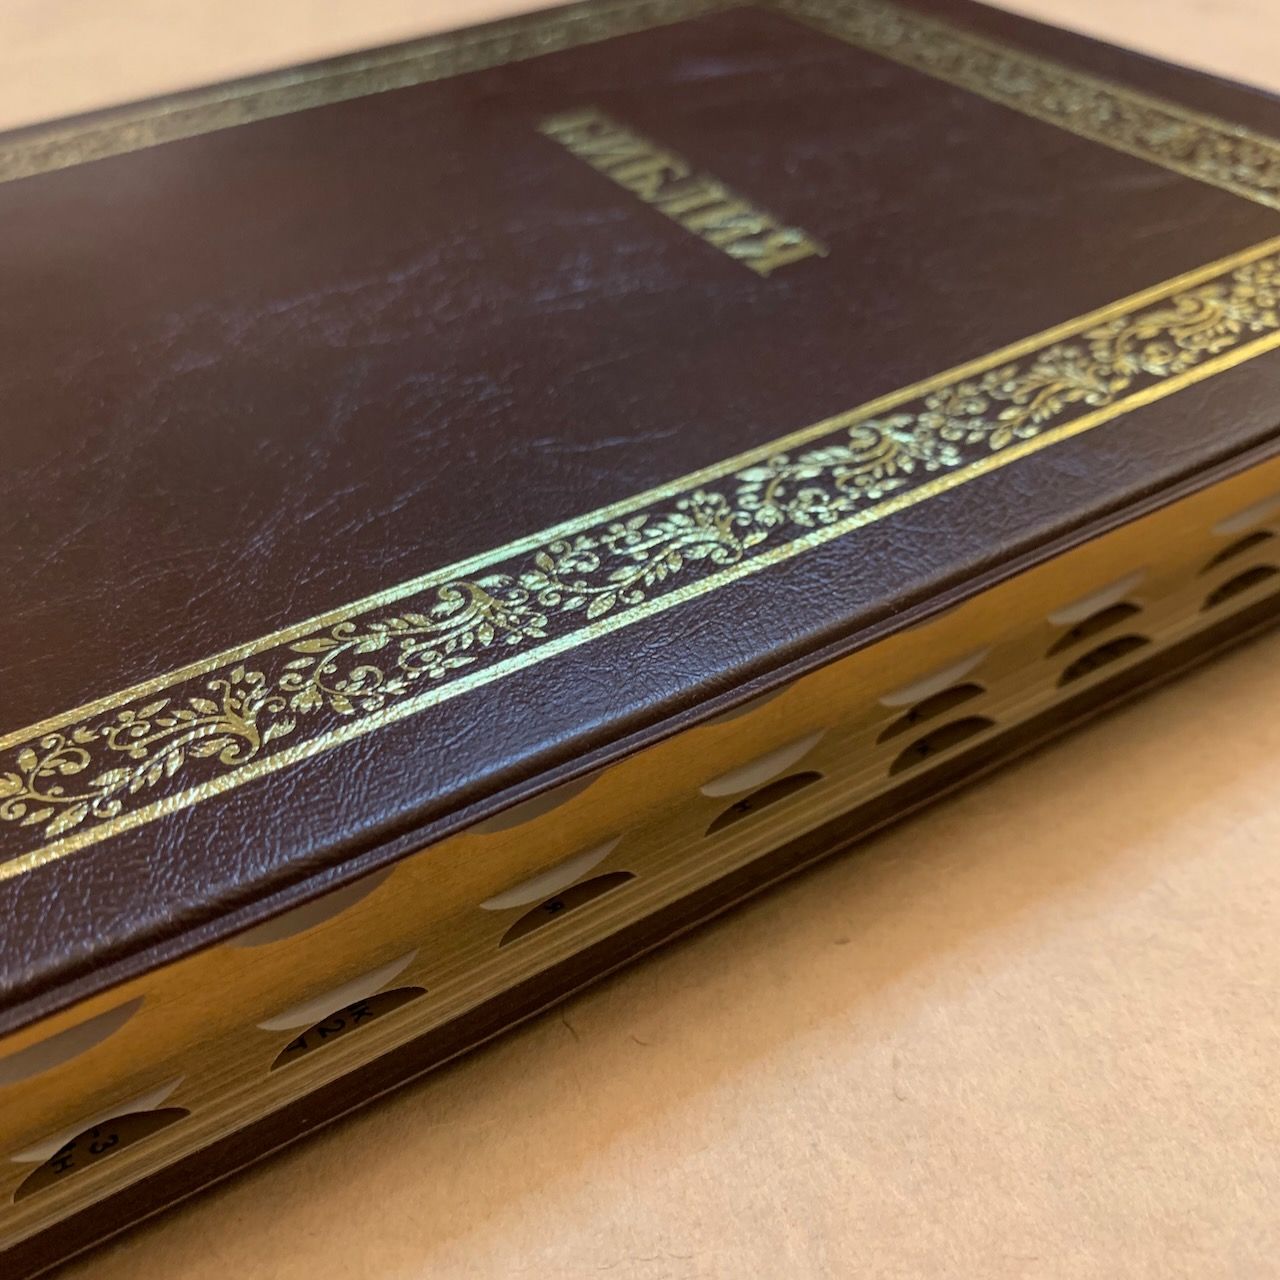 Библия 076TI код А3,  дизайн "золотая рамка растительный орнамент",  цвет темно-коричневый, переплет из искусственной кожи с индексами